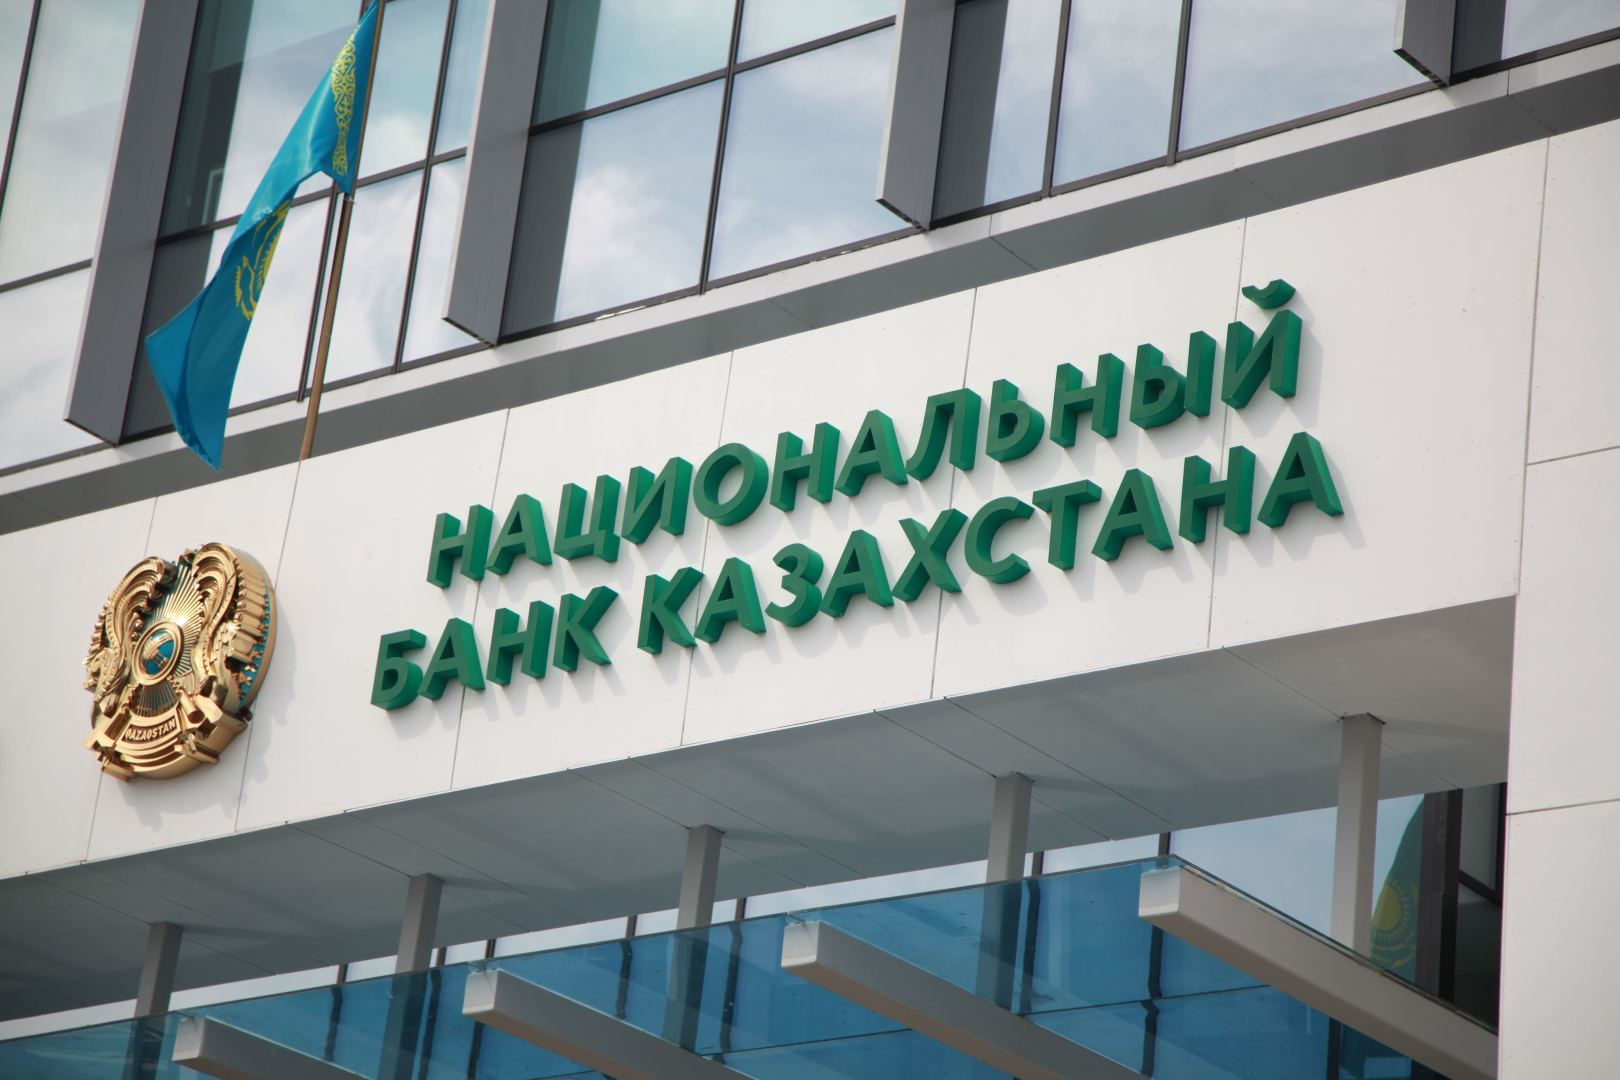 Нацбанк Казахстана предложил ужесточить выдачу банковских карт иностранцам